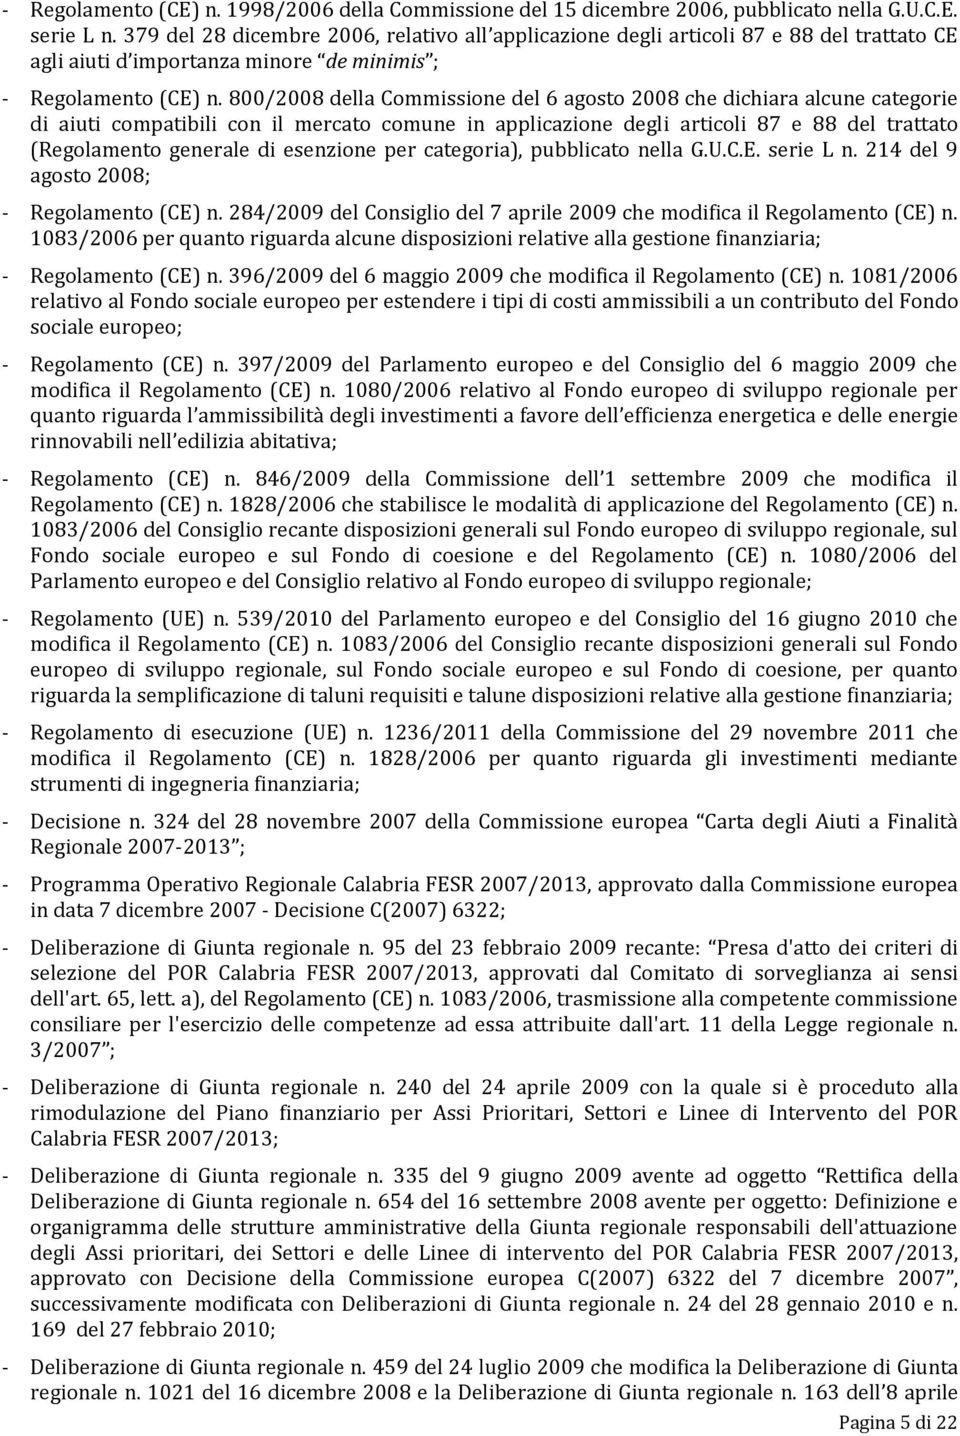 800/2008 della Commissione del 6 agosto 2008 che dichiara alcune categorie di aiuti compatibili con il mercato comune in applicazione degli articoli 87 e 88 del trattato (Regolamento generale di